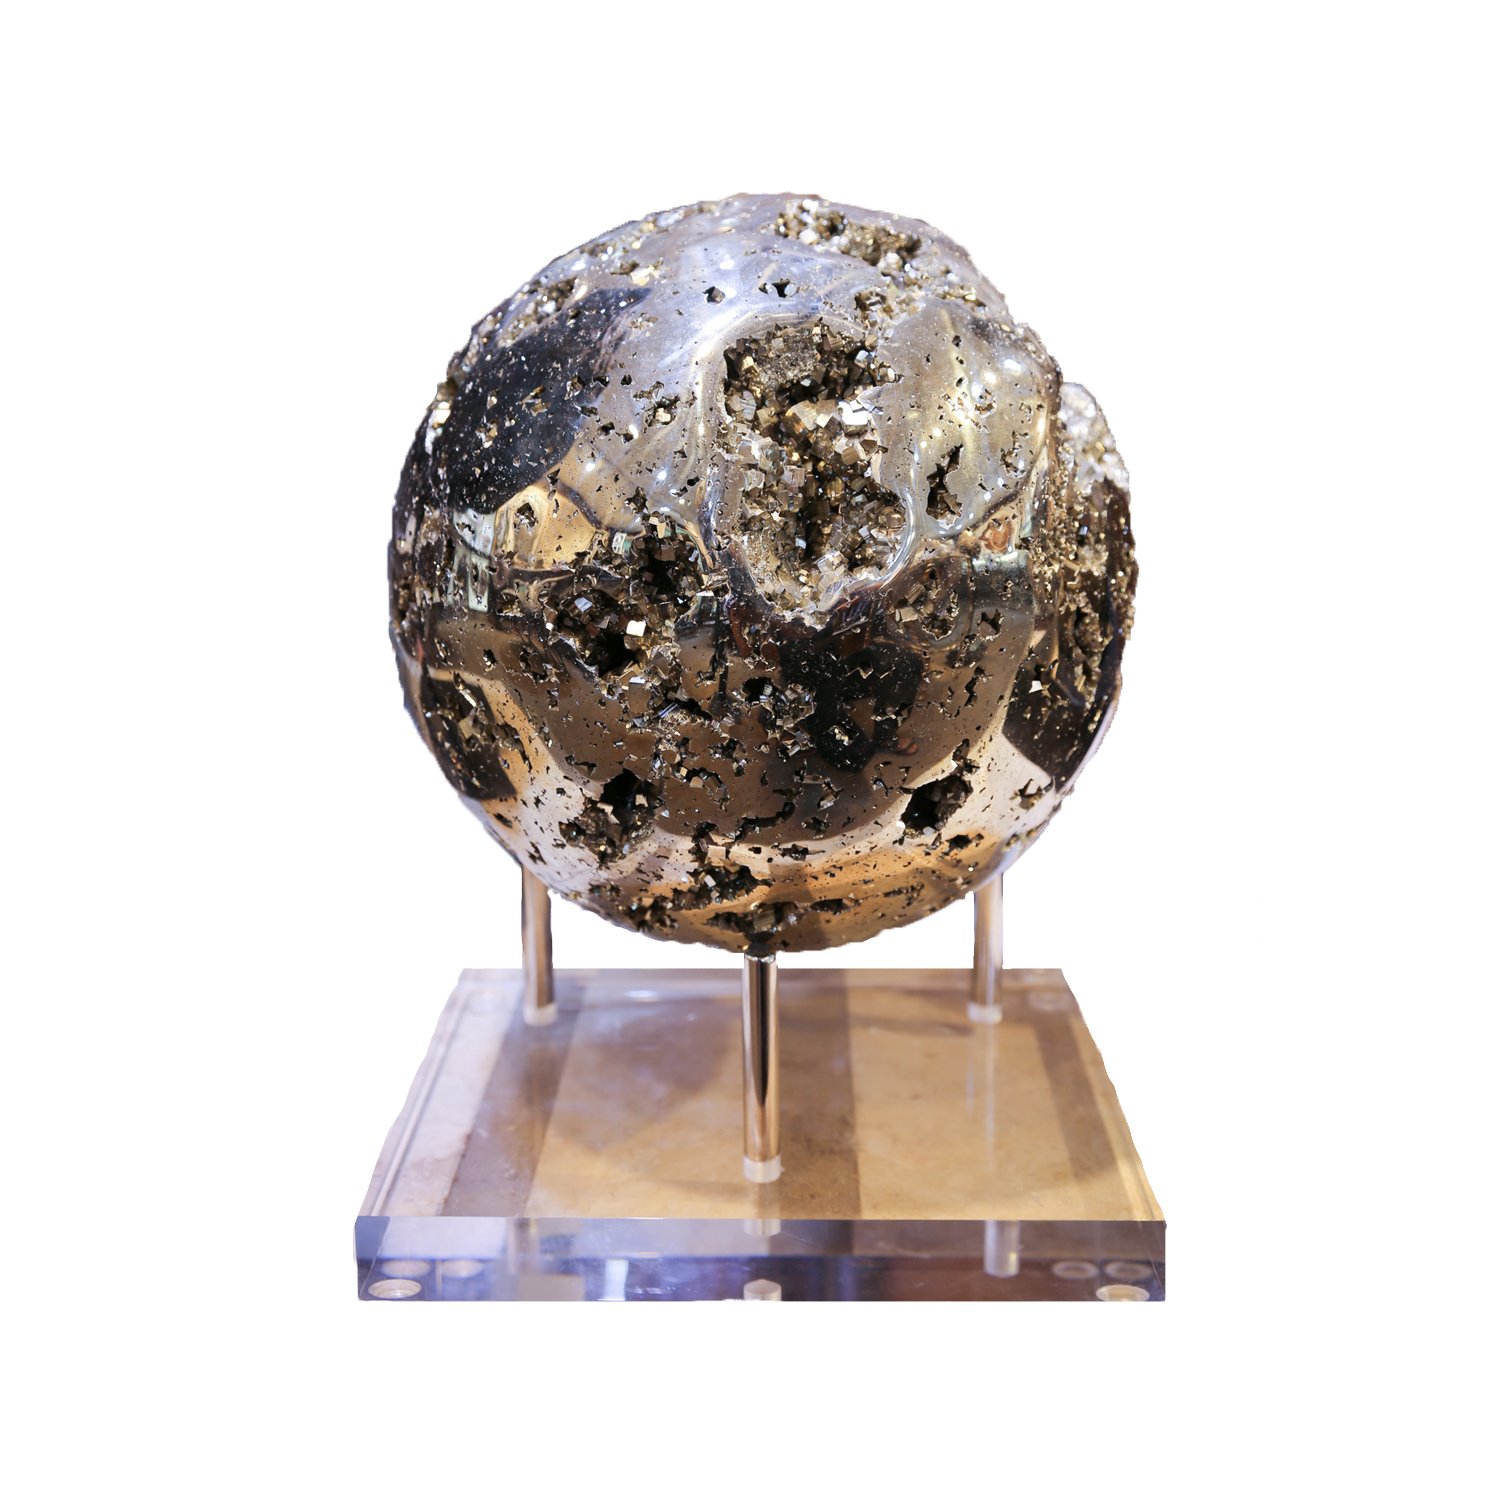 Peru Pyrite Sphere